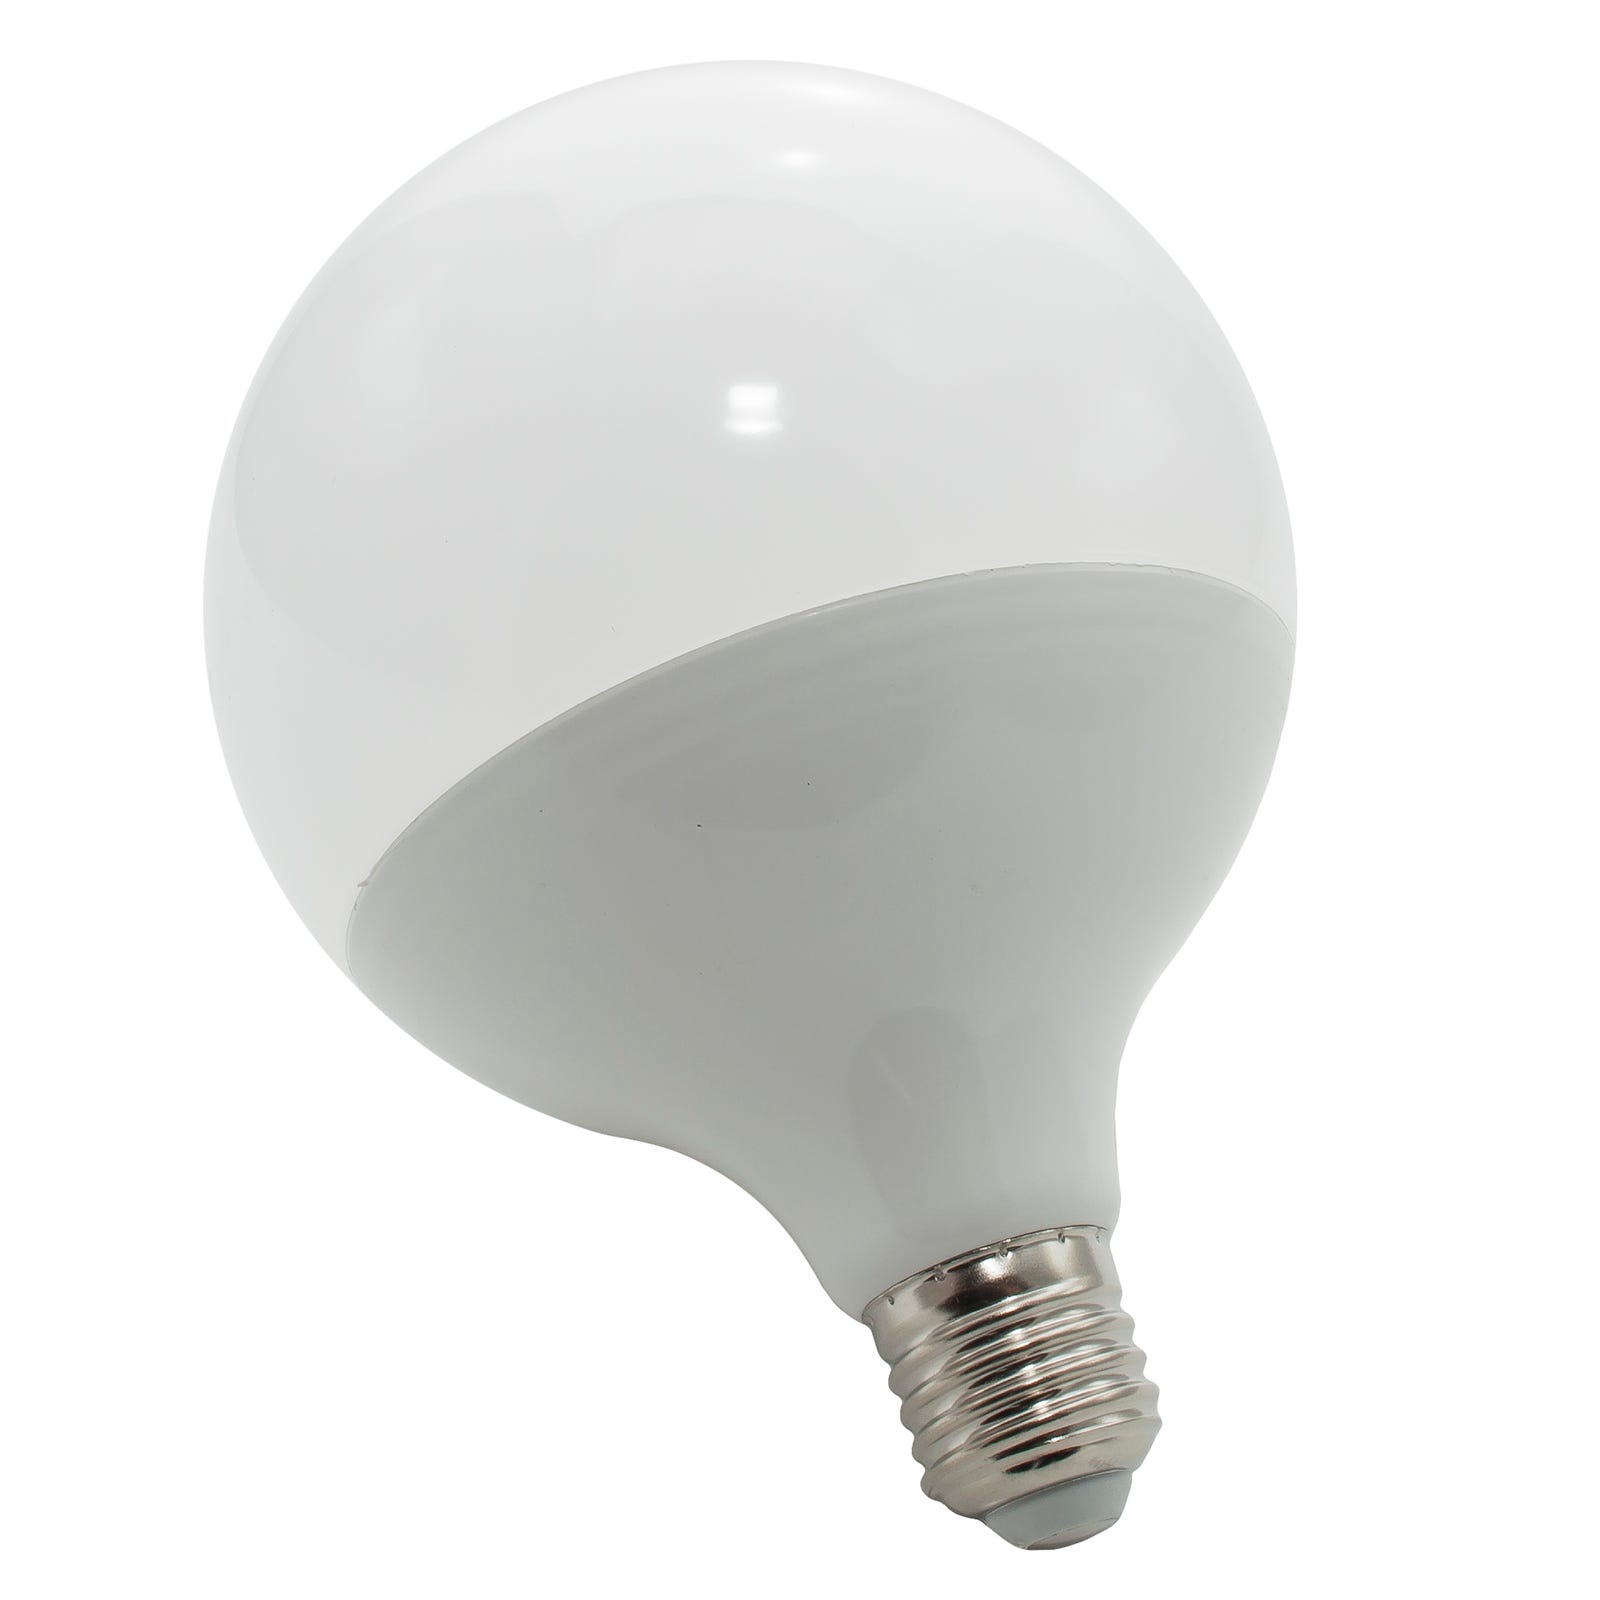 Lampe globe LED E27 ampoule de puissance 20w 1800 lumens lumière diffuse  230V COLD LIGHT 6500K